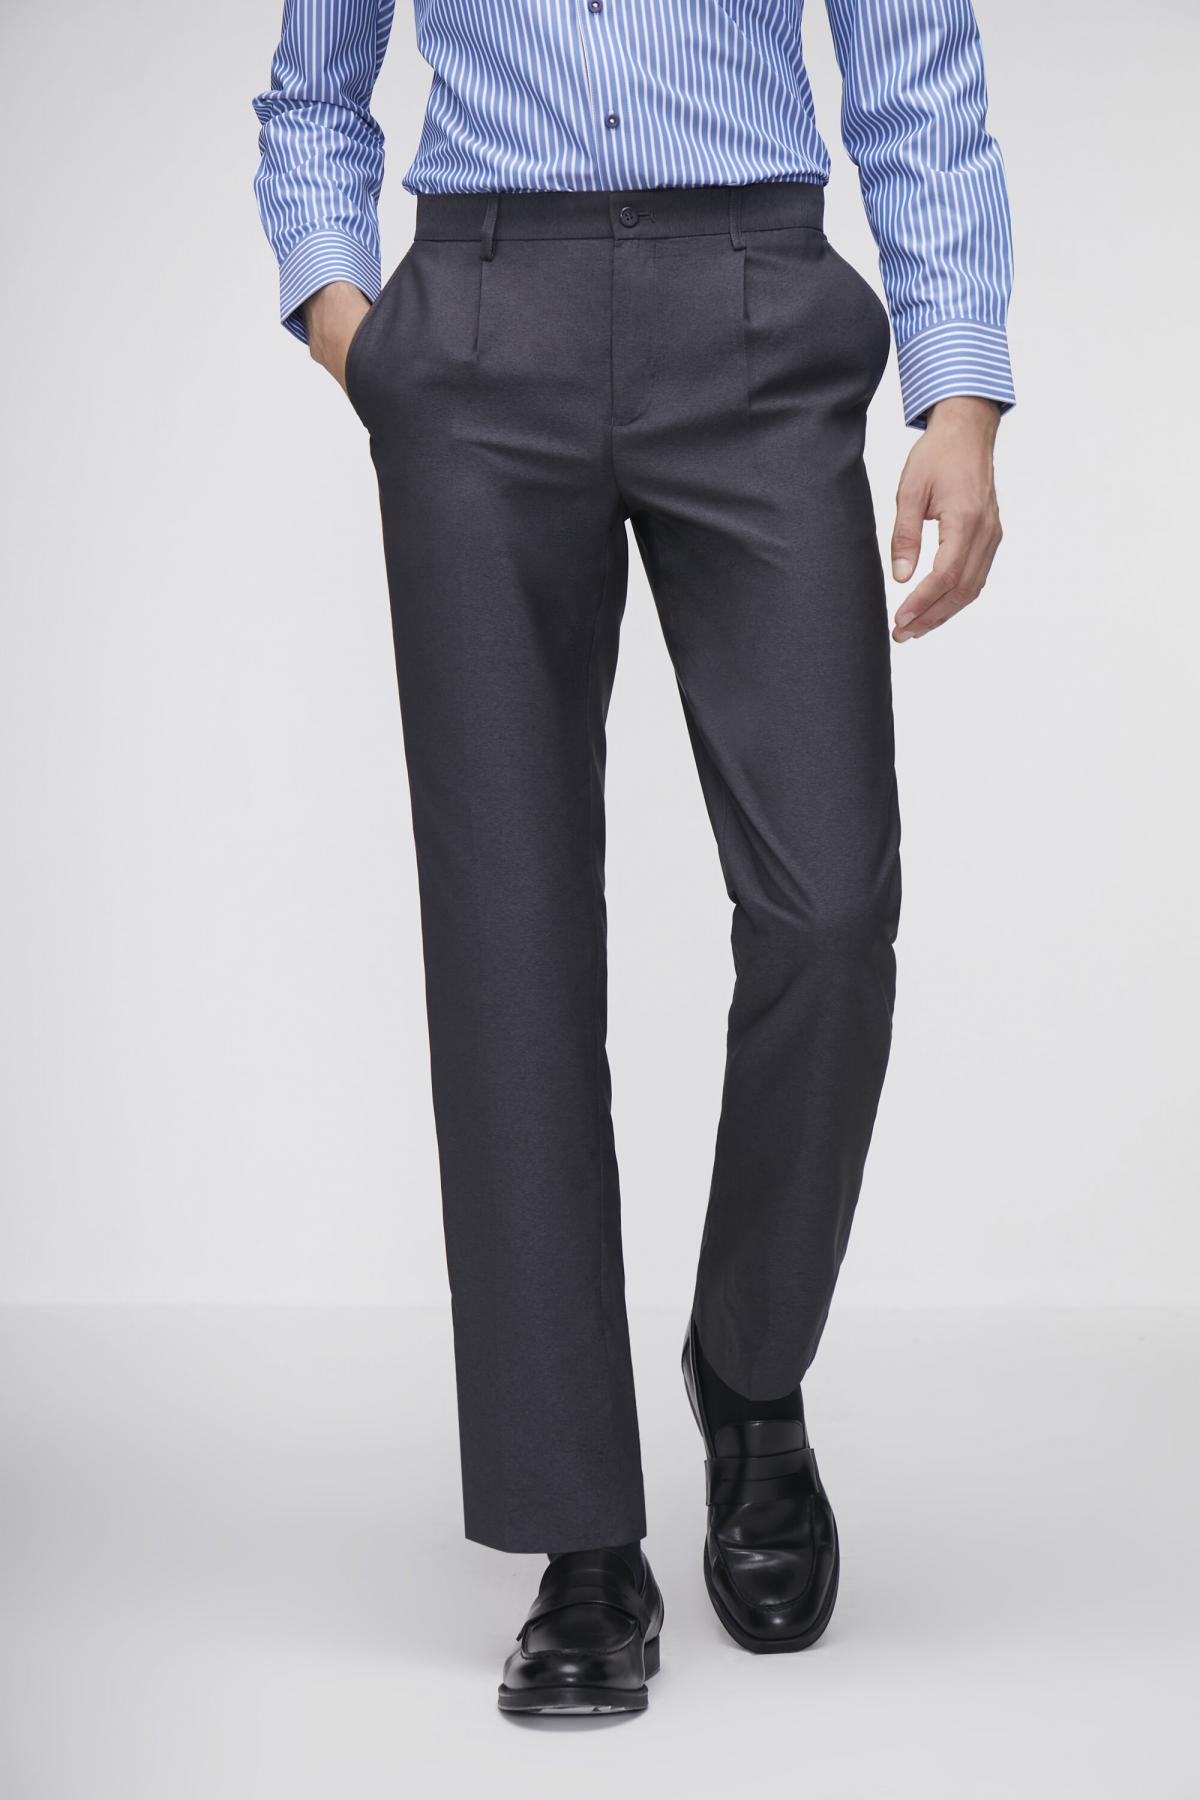 G2000 | Men's Cool Biz Machine Washable Slim Fit Suit Pants (Grey